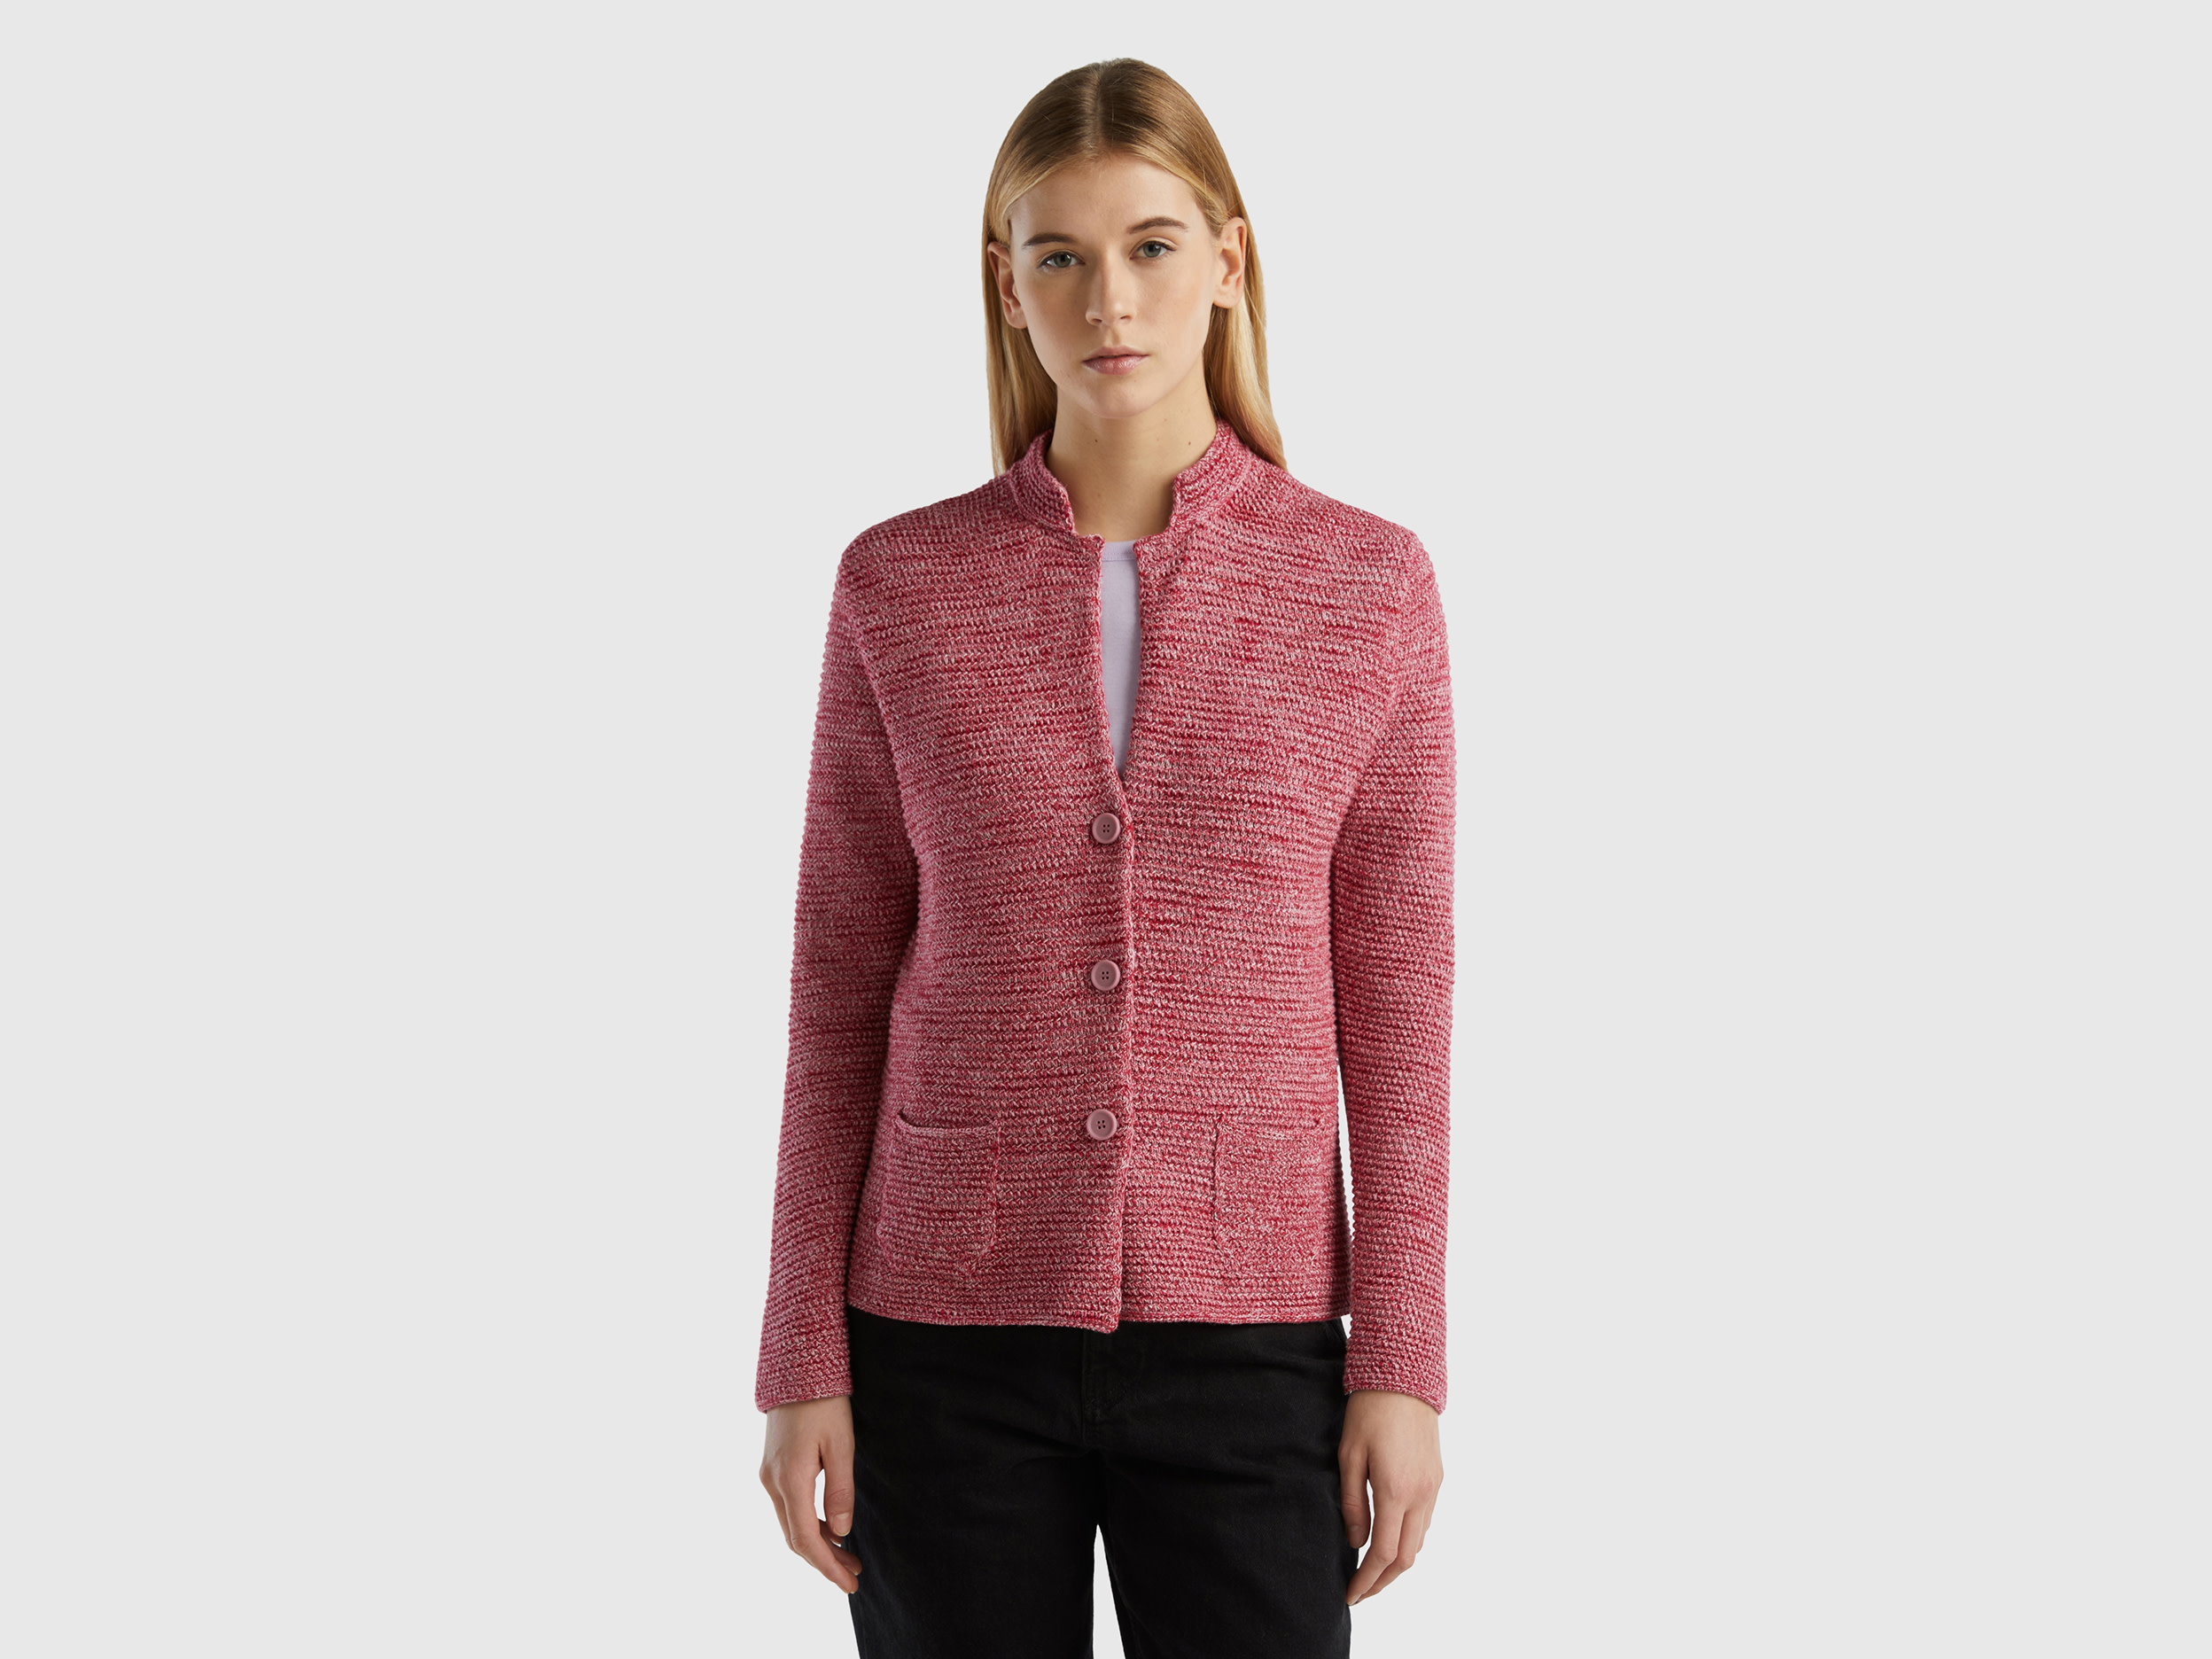 Benetton, 100% Cotton Knit Jacket, size XXS, Fuchsia, Women